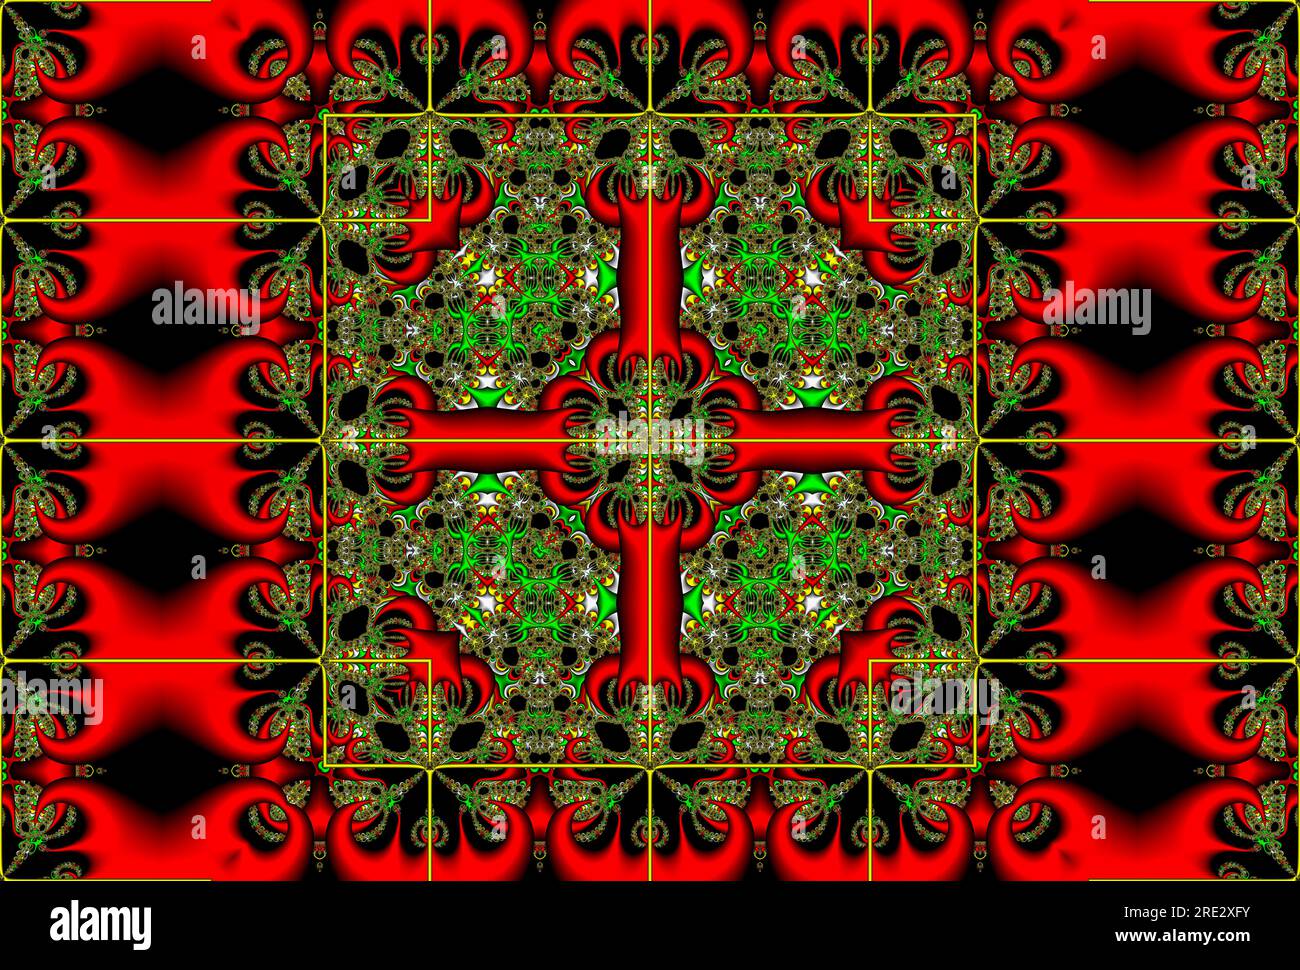 Farbenfrohe fraktale Kunstwerke Bild digitale Kunst, symmetrischer Kaleidoskop-Effekt symmetrische farbenfrohe geometrische Musterkunst Stockfoto